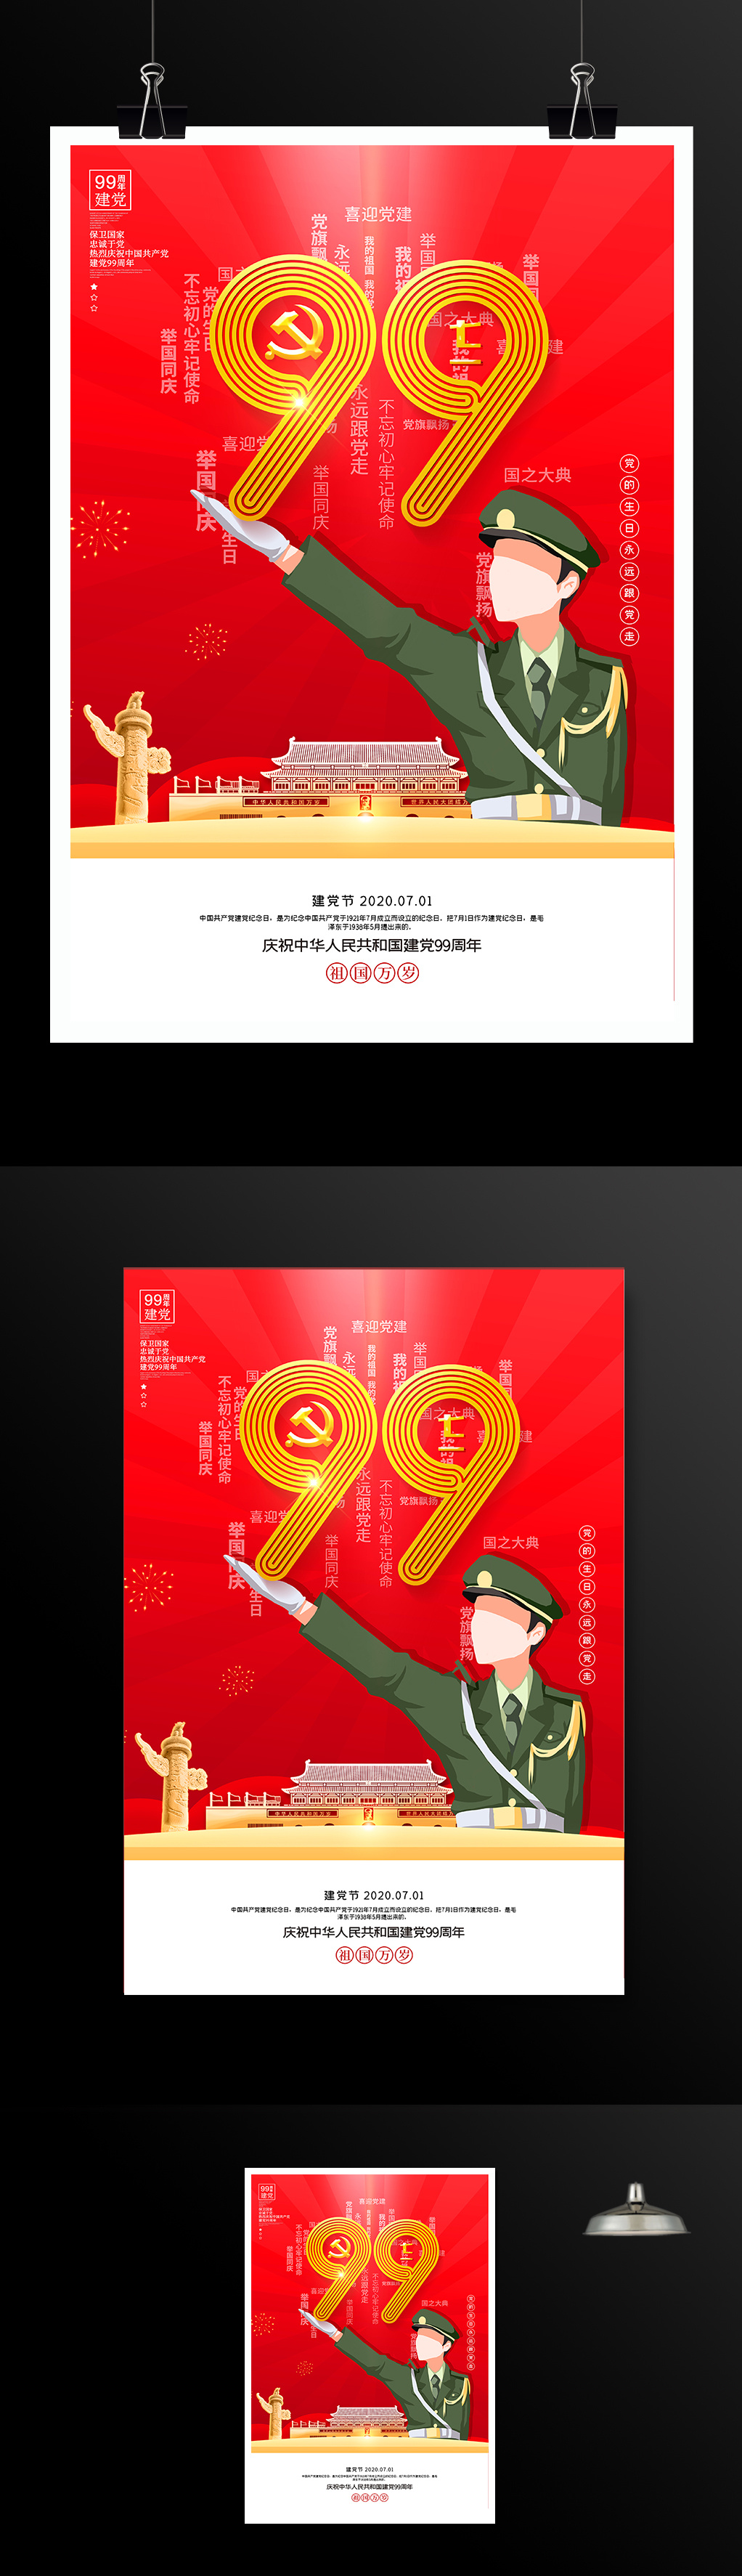 七一建党99周年宣传海报